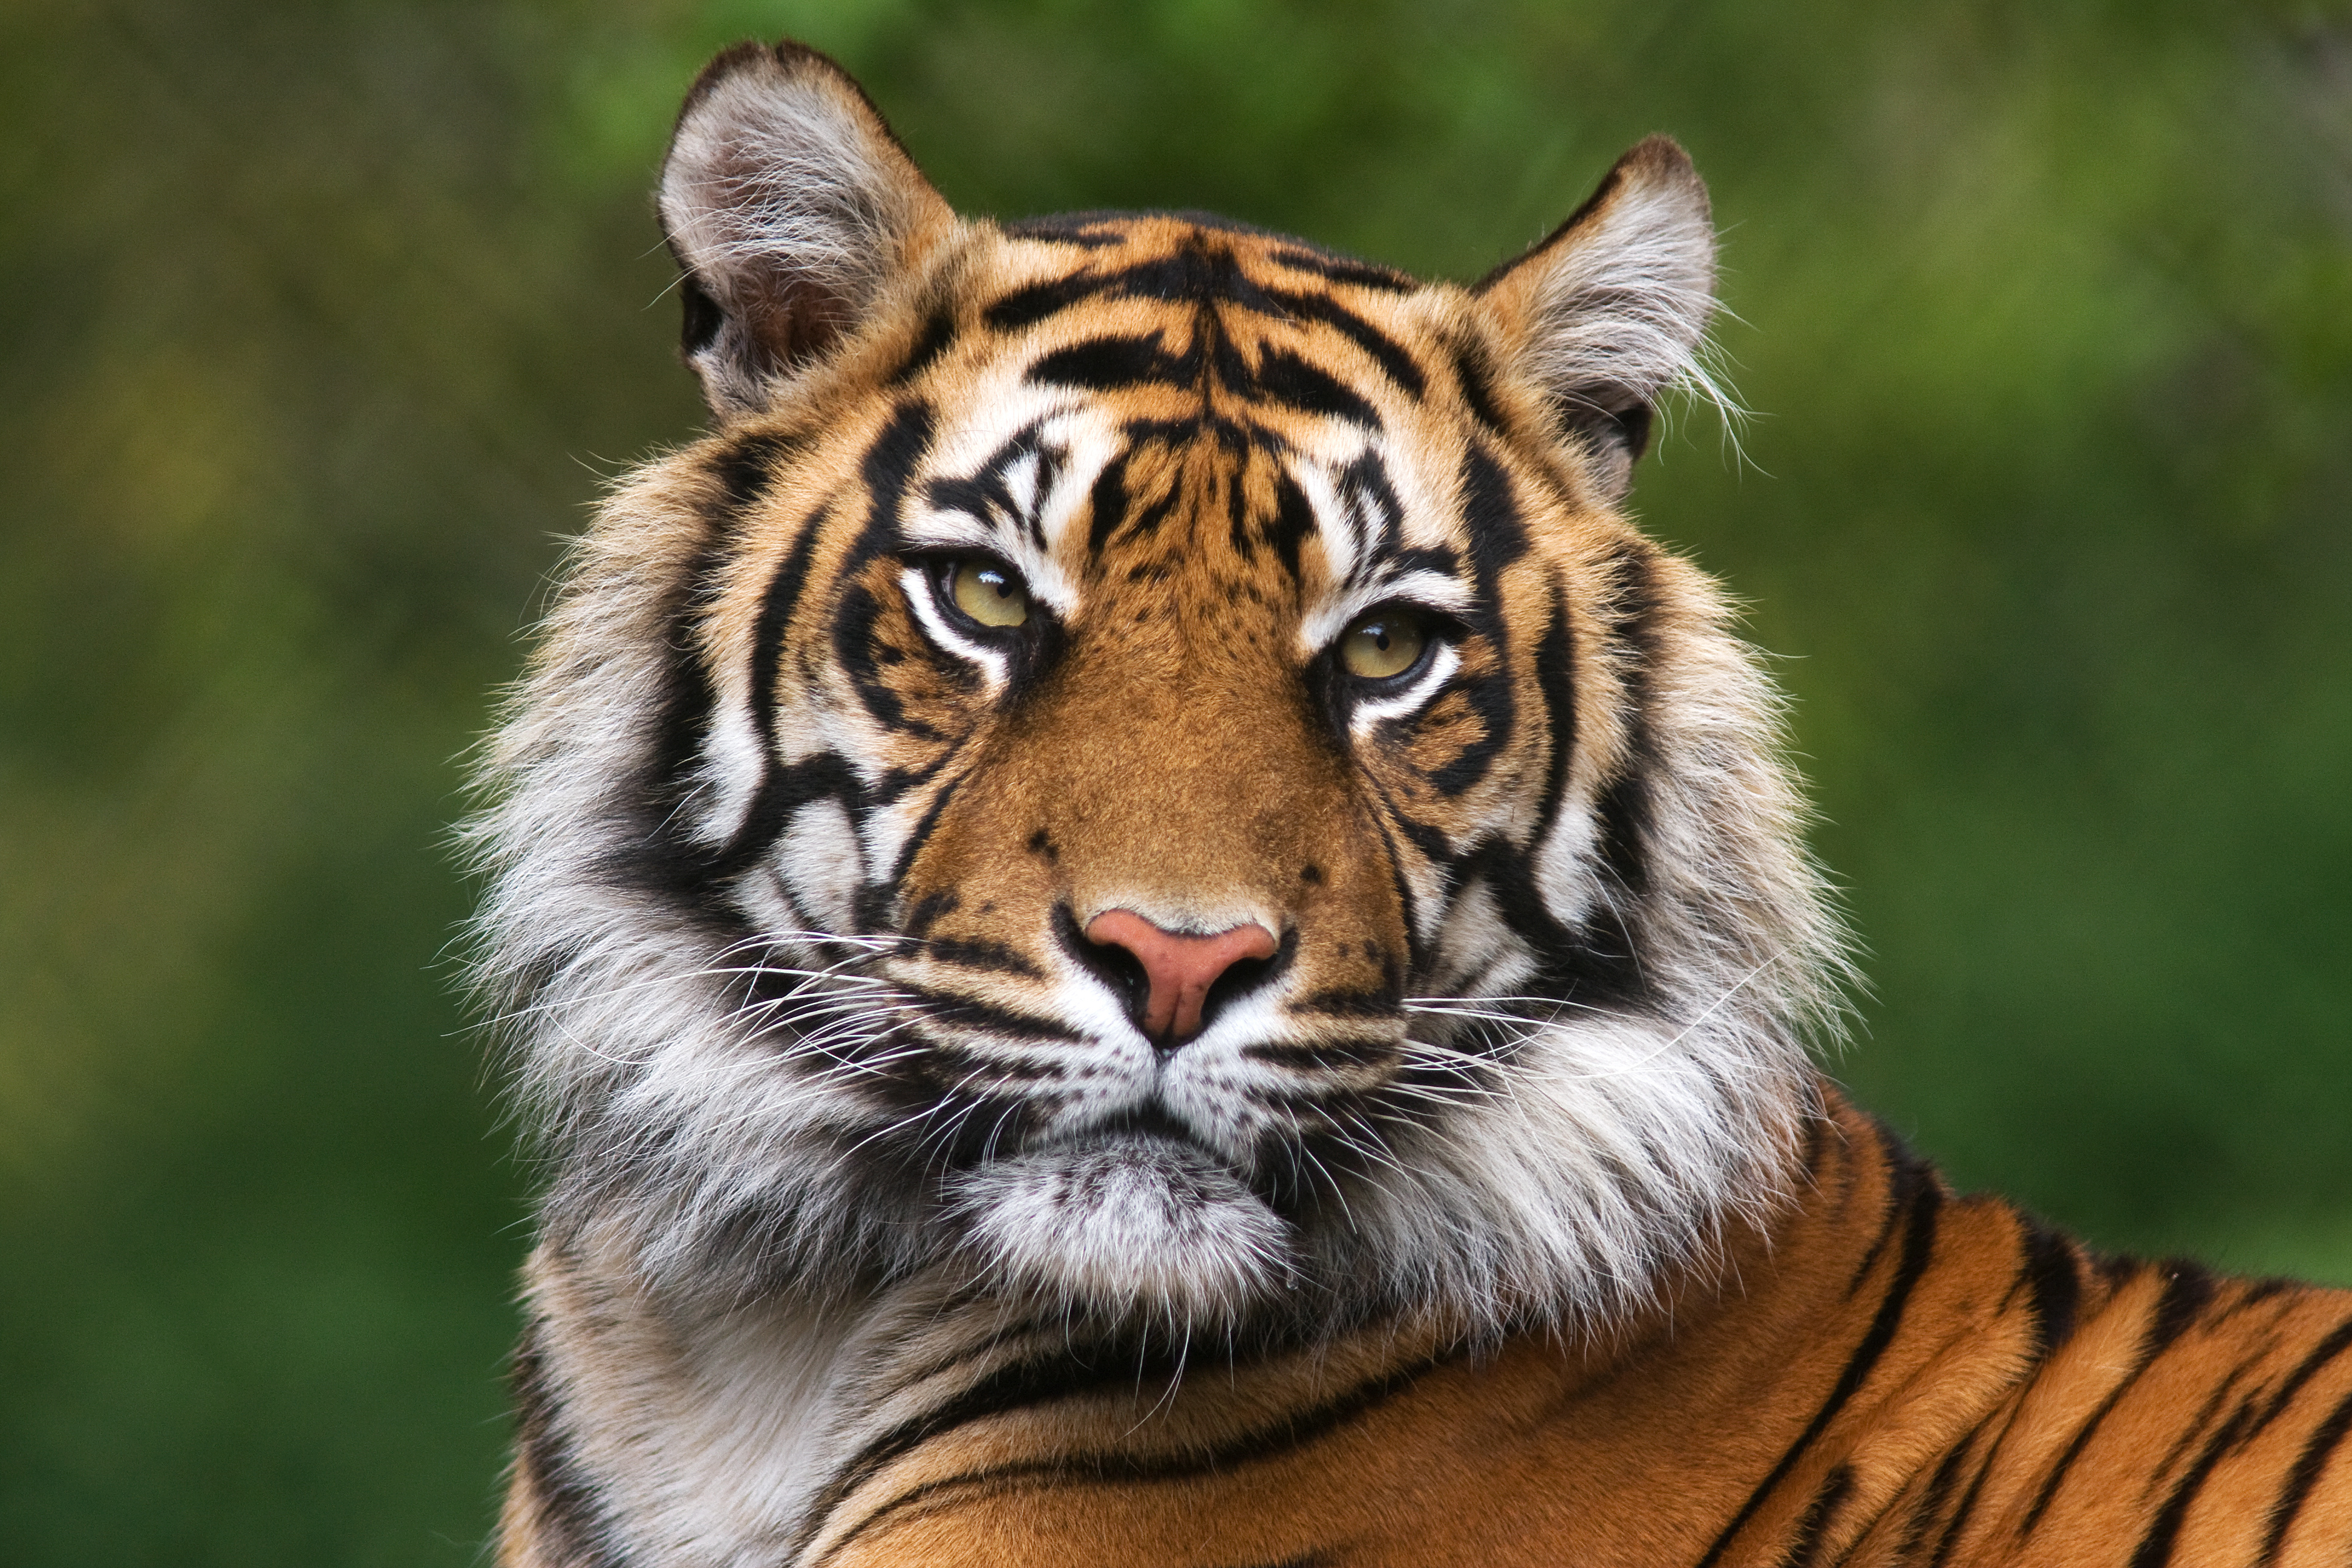 L'espèce du tigre, Panthera tigris, comporte plusieurs sous-espèces. Dont le tigre d'Indochine, qui vit entre autres en Thaïlande. © Bertie10, Adobe Stock